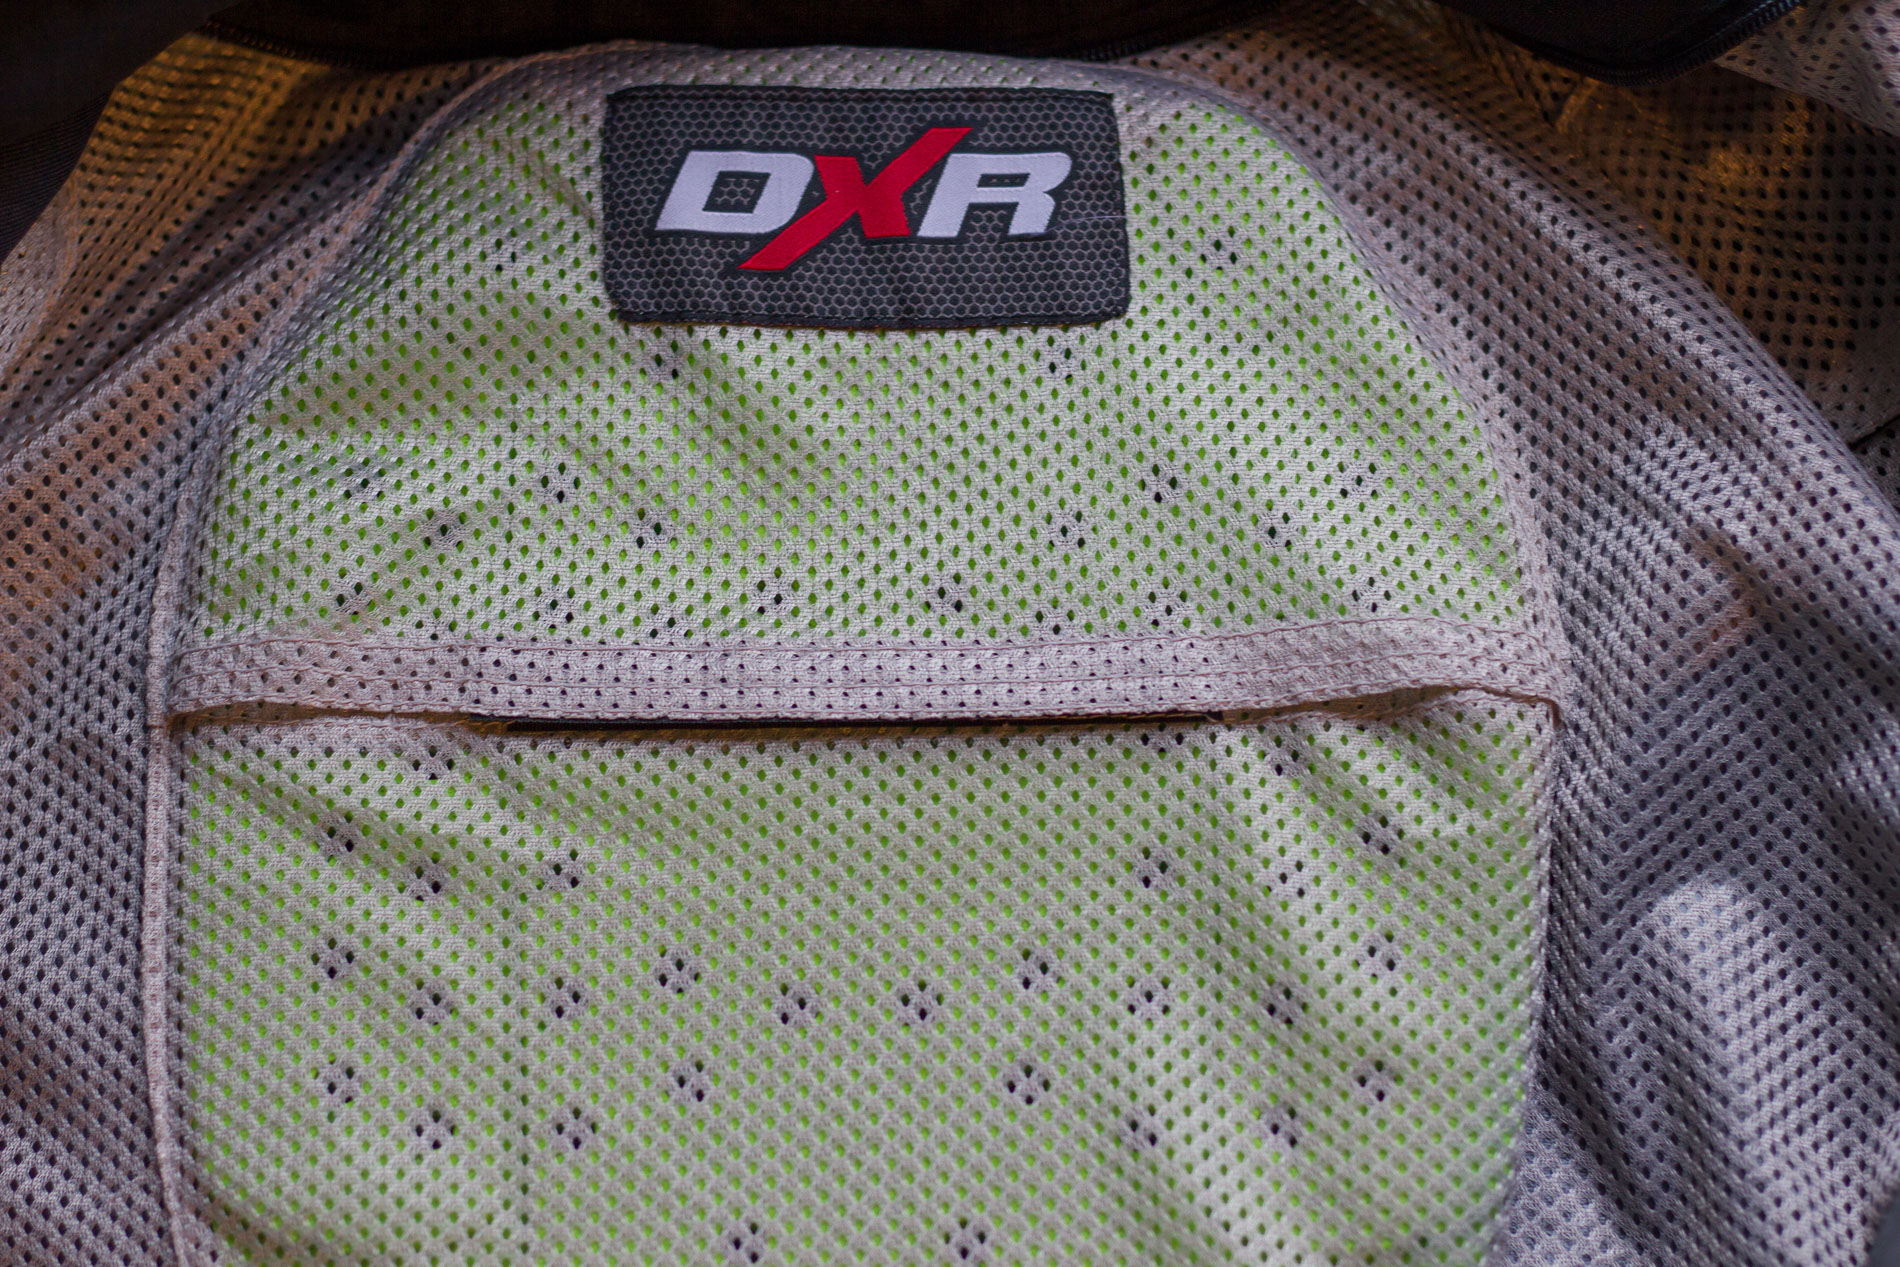 Como era de esperar, el DXR Volver protector de espalda encaja perfectamente en la chaqueta de DXR Roadtrip